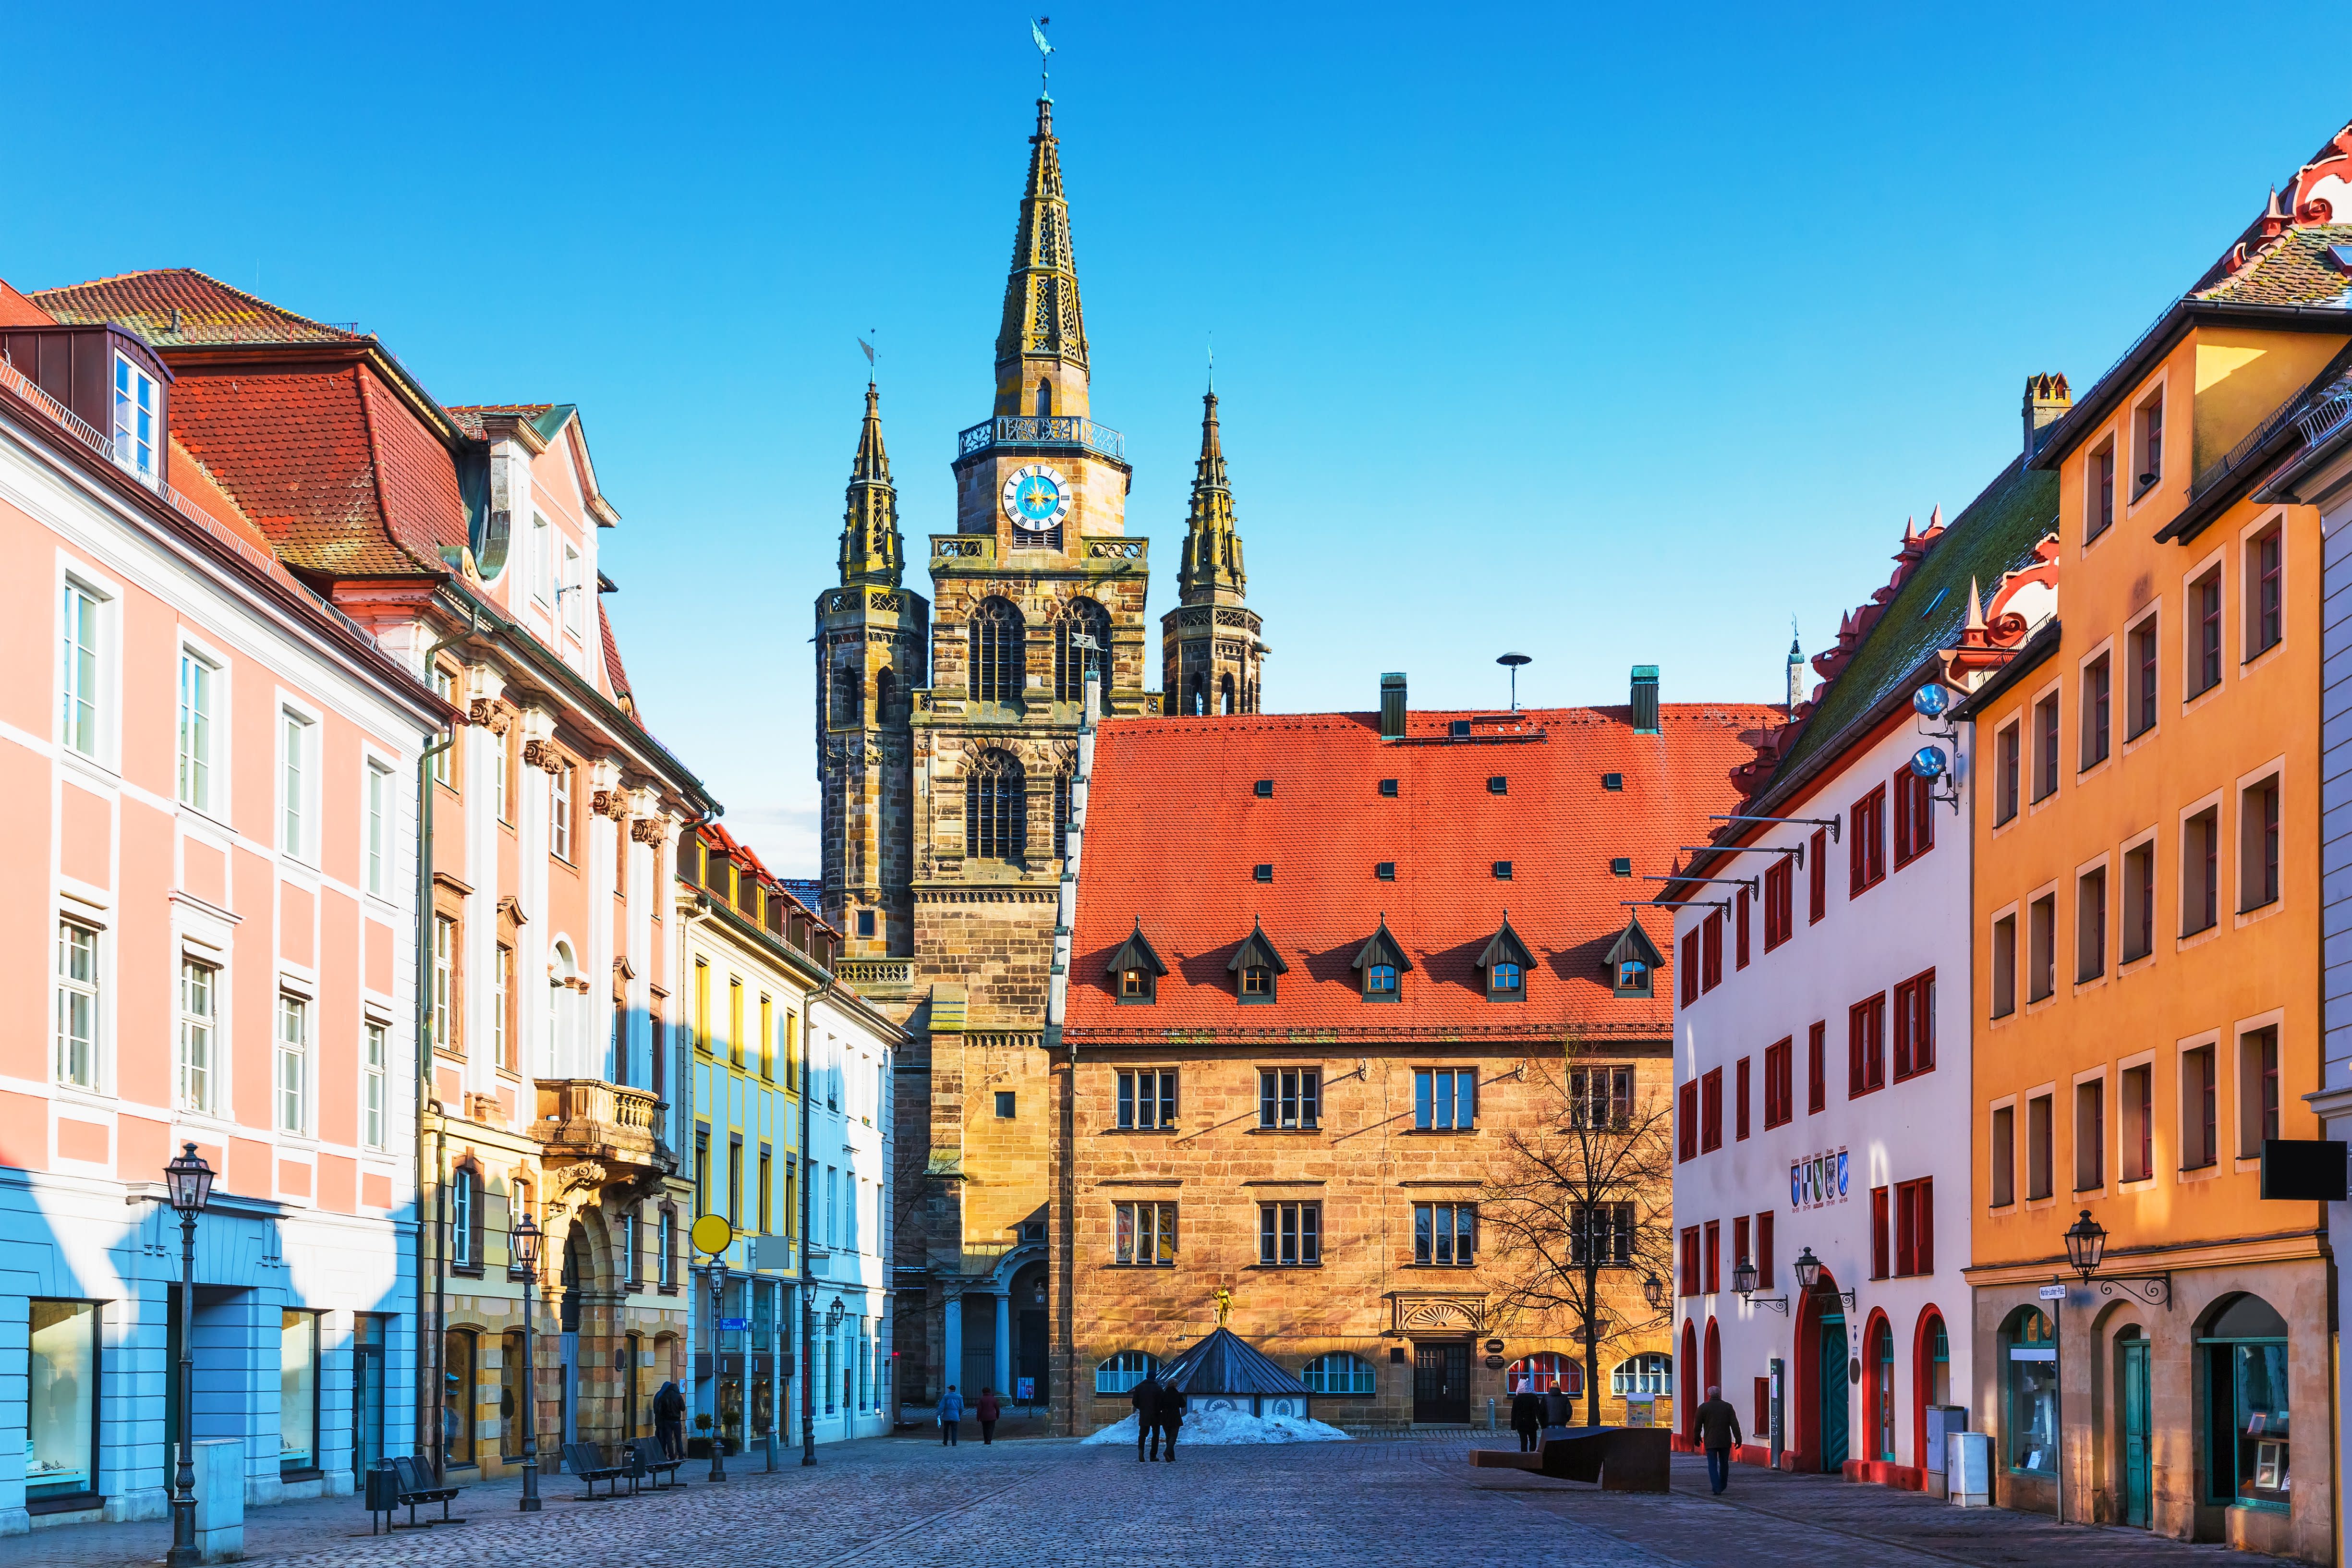 Ansicht der Stadt Ansbach mit der Sehenswürdigkeit Martin-Luther-Platz